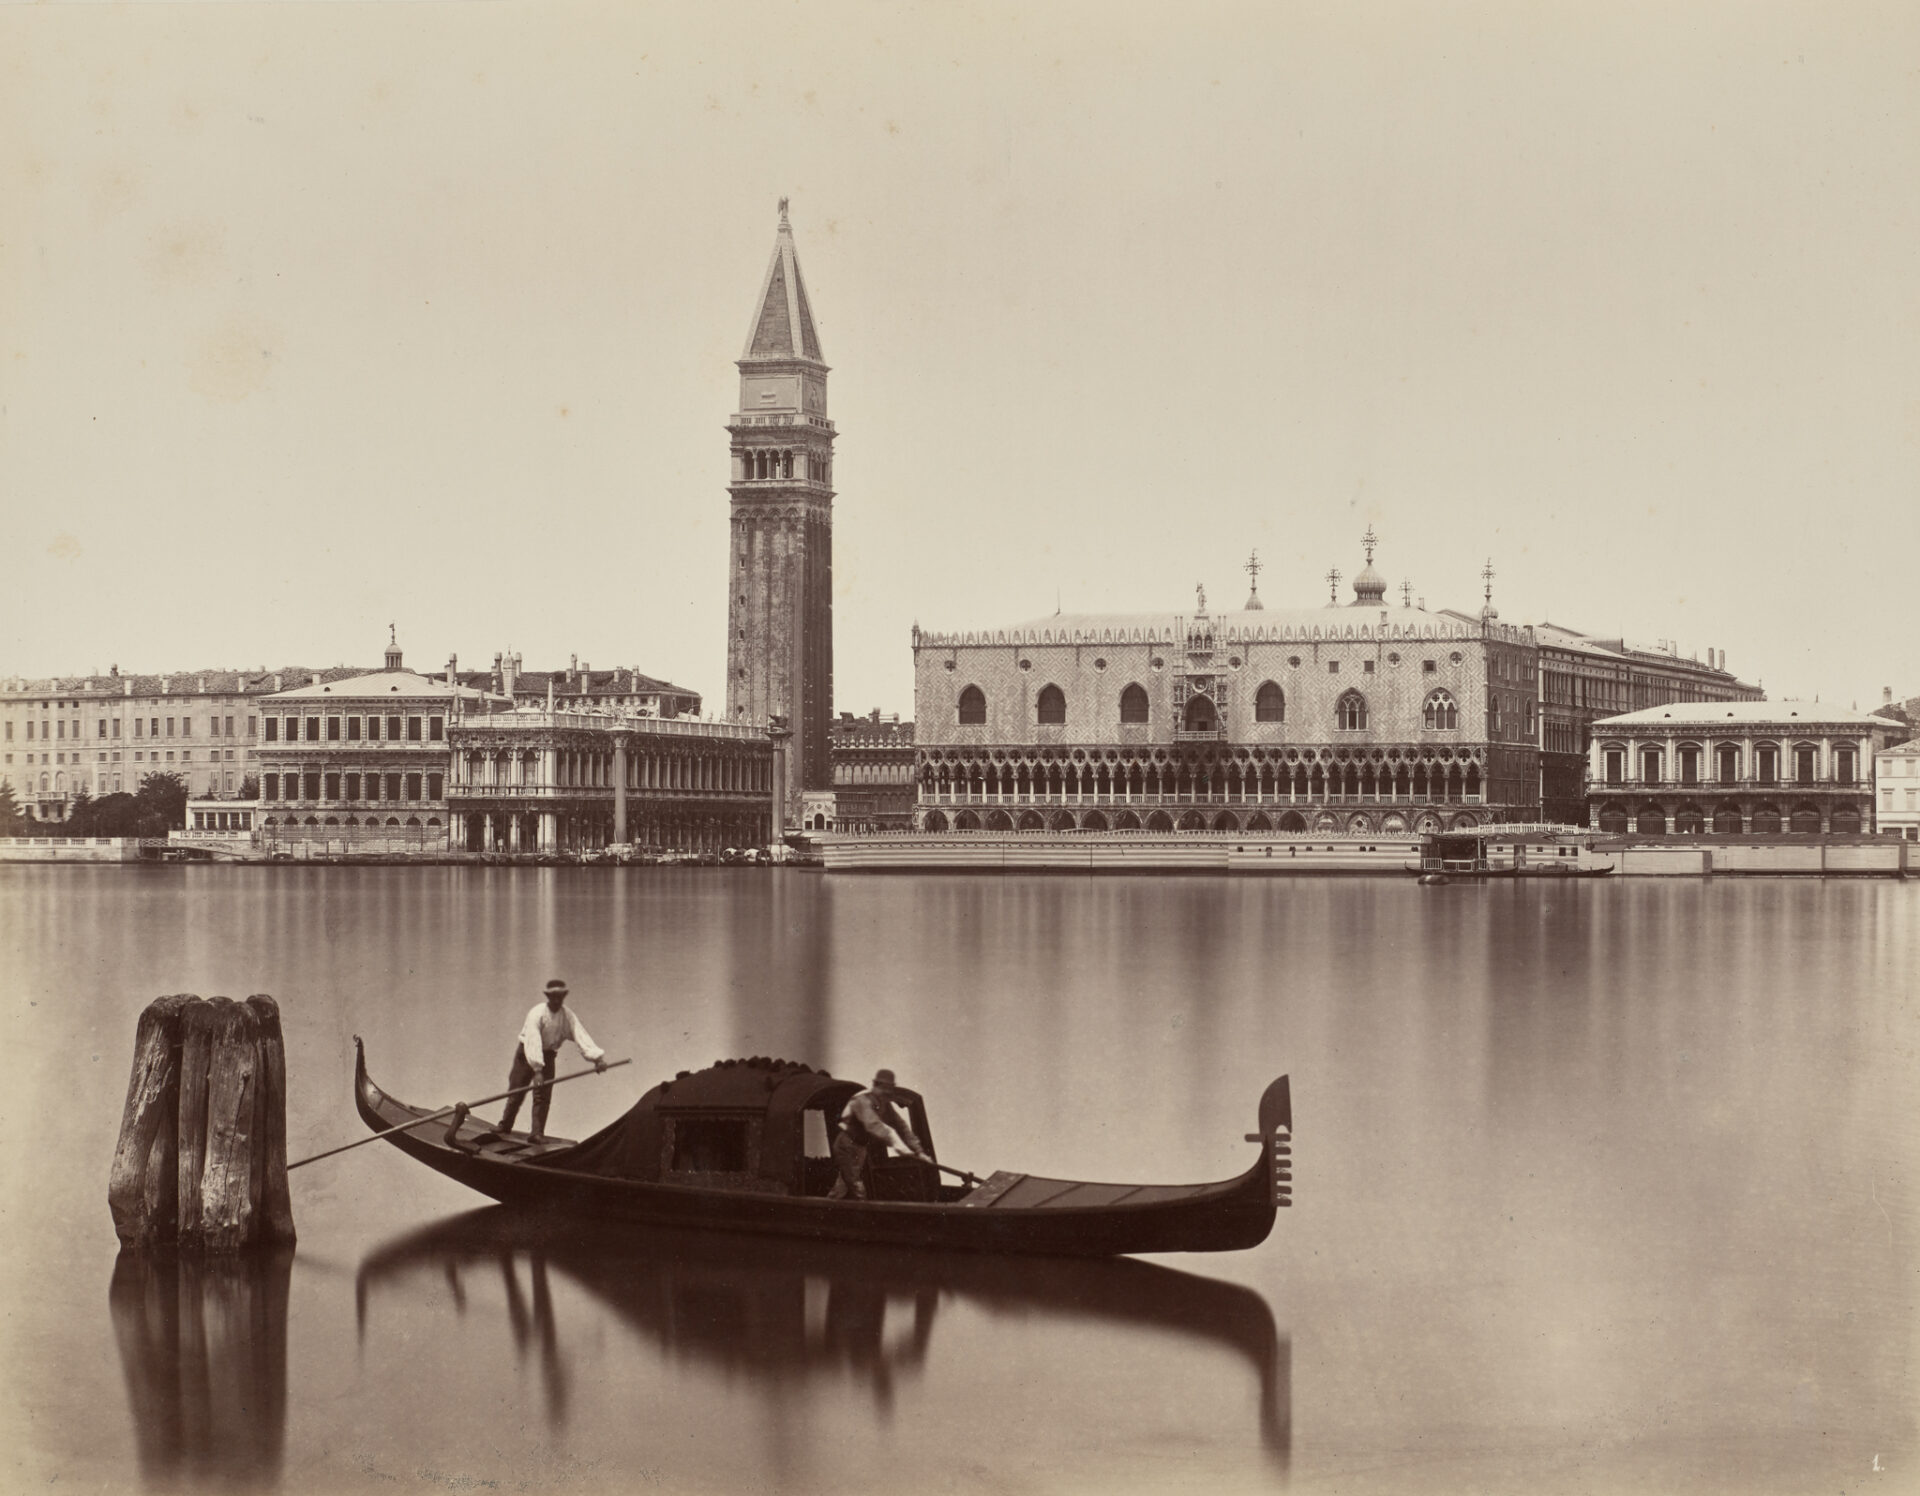 Carlo Naya, Venedig: Blick auf Markusbibliothek, Campanile und Dogenpalast, um 1875, Städel Museum, Frankfurt am Main, Foto: Städel Museum, Frankfurt am Main